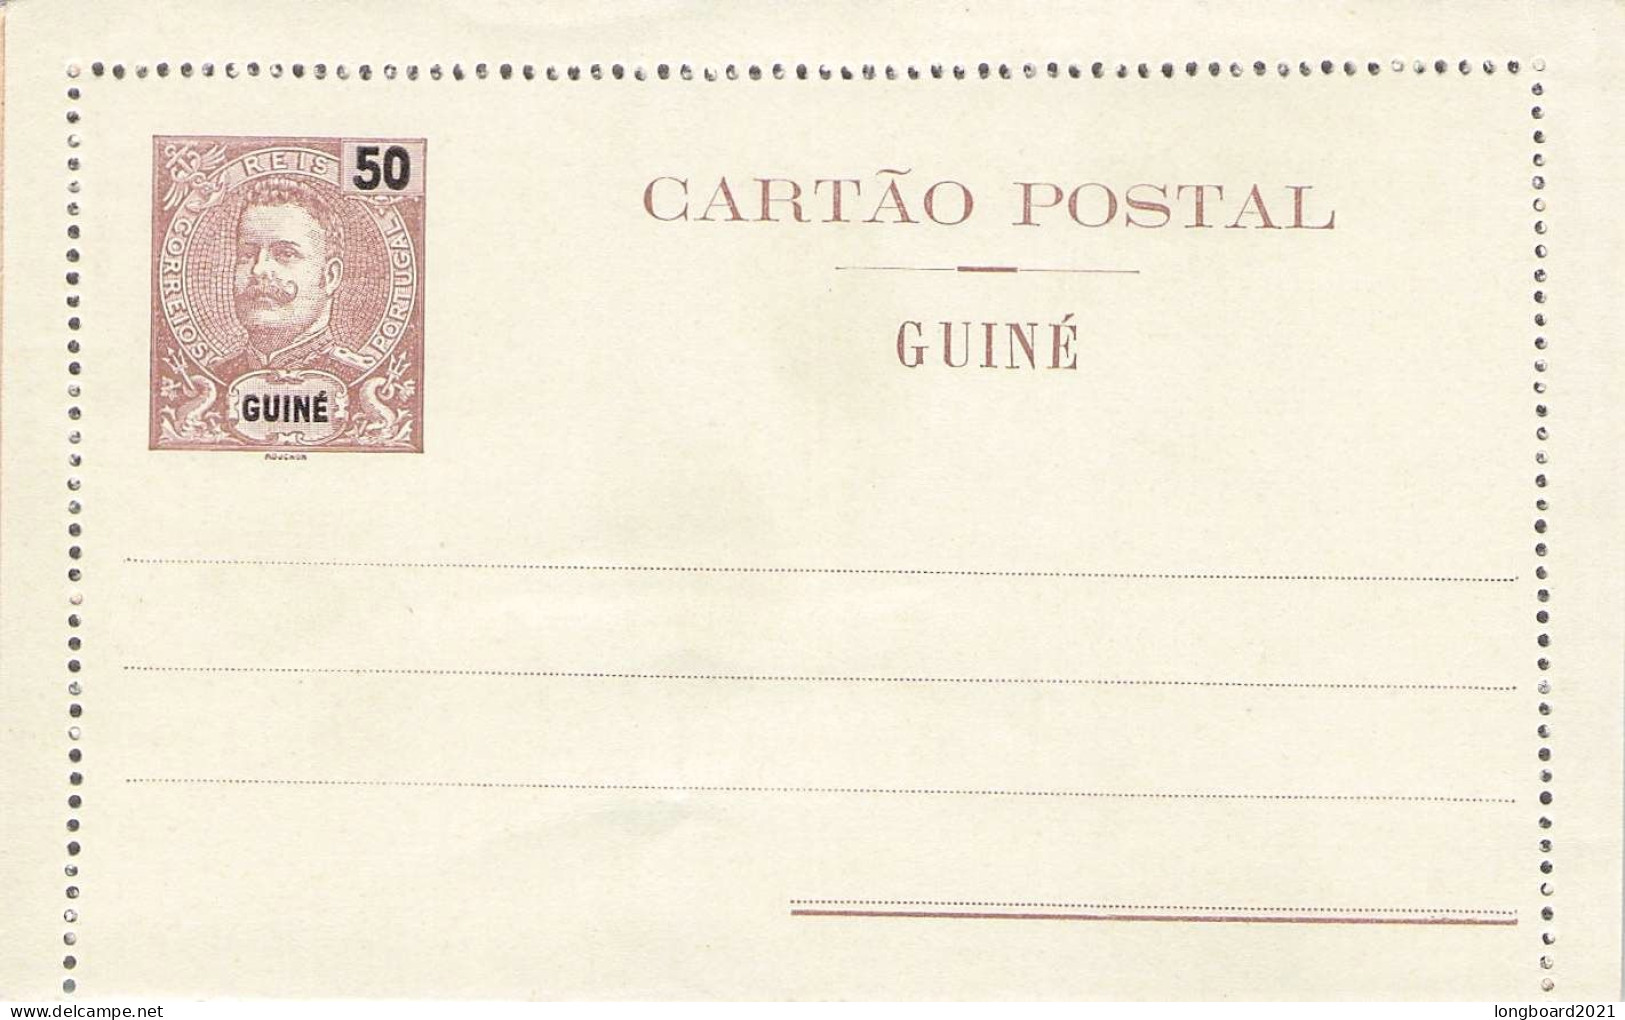 PORT. GUINEA - CARTAO POSTAL 50 REIS Unc / 2149 - Portugees Guinea